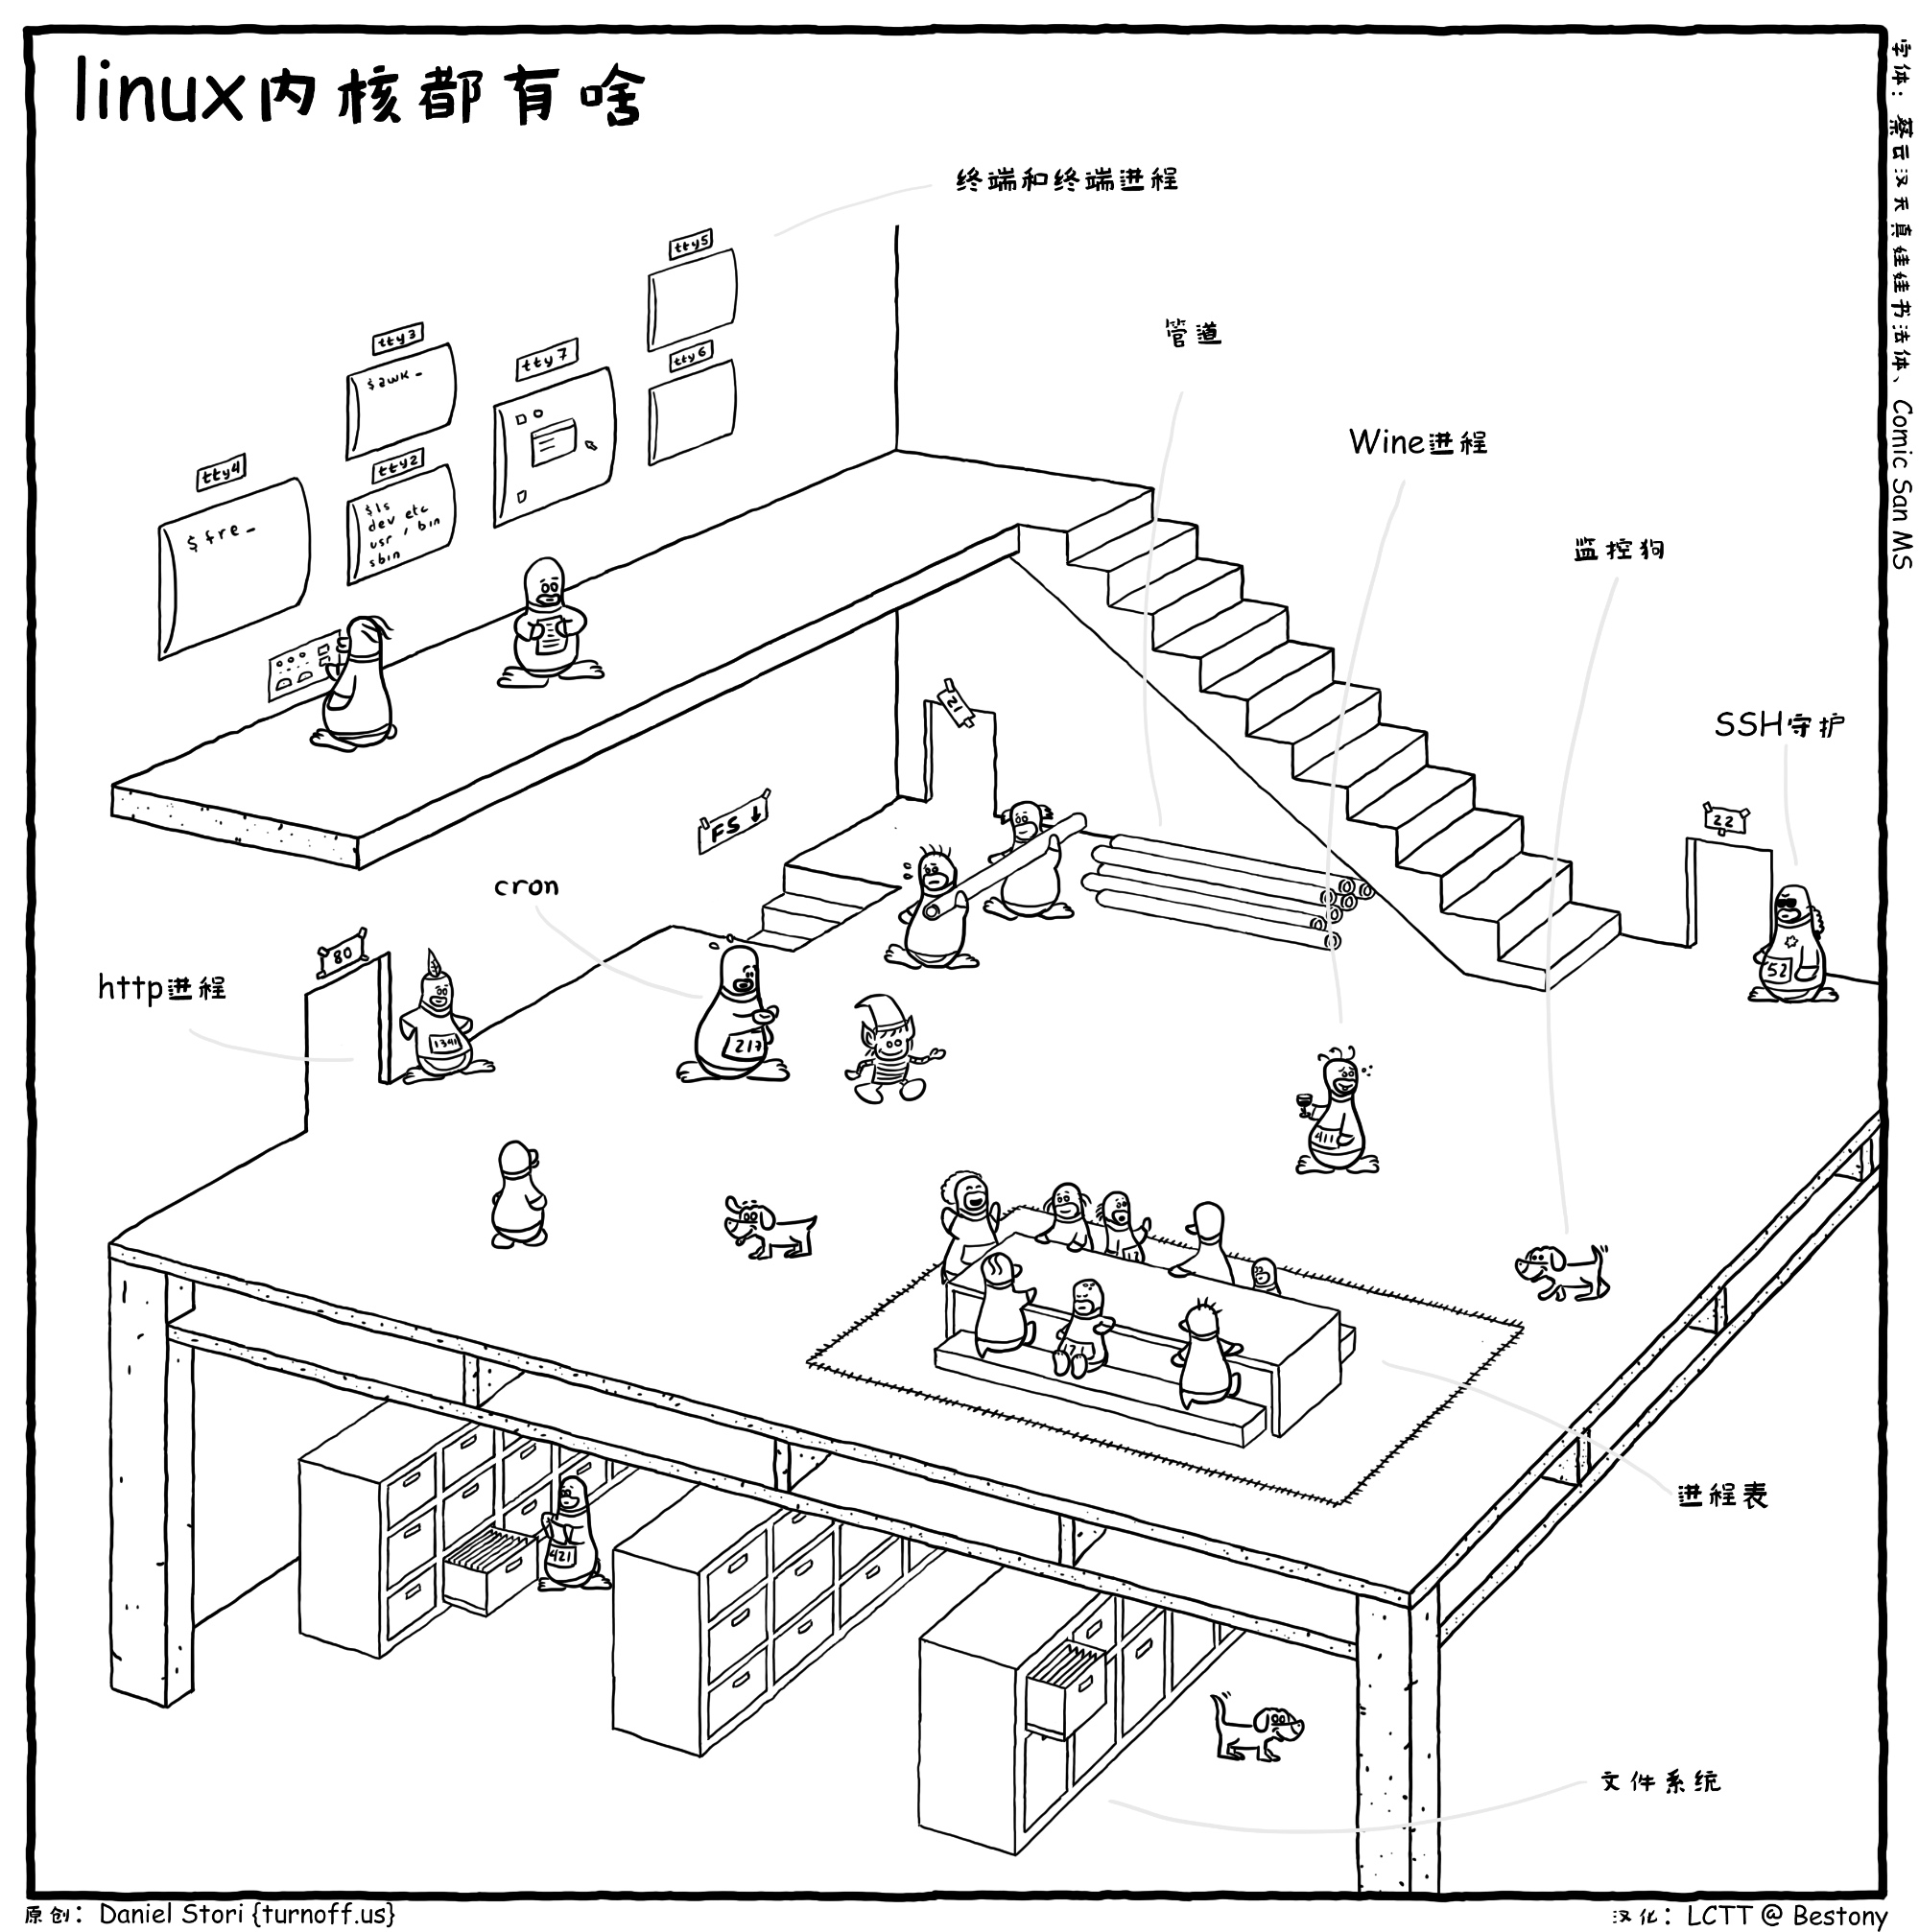 用漫画让你清楚了解linux内核，看懂了么？